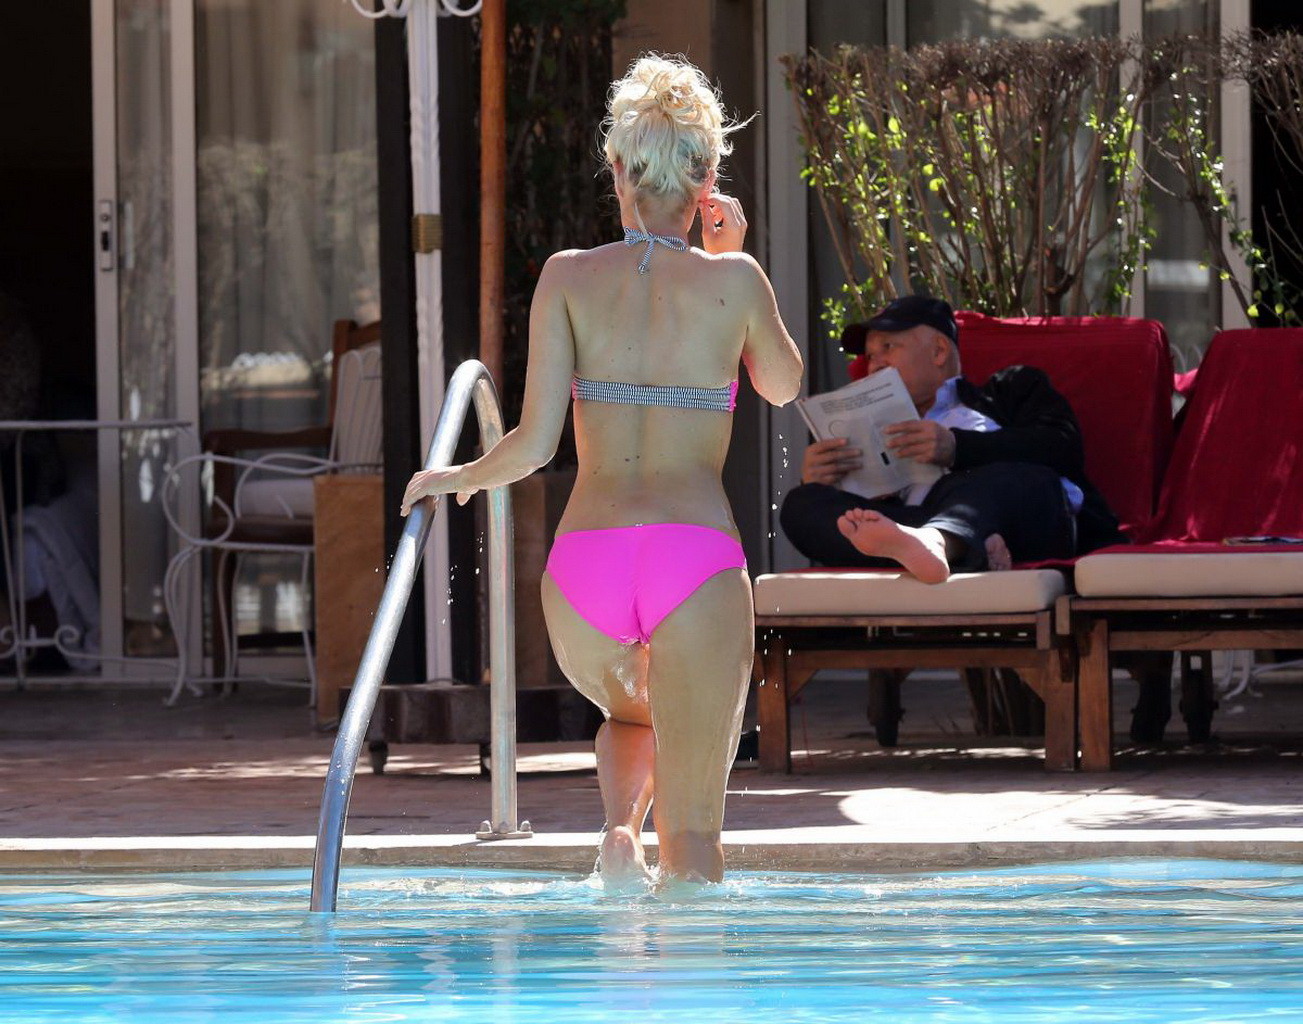 Danielle armstrong montre son corps bien dessiné dans un minuscule bikini rose.
 #75198675